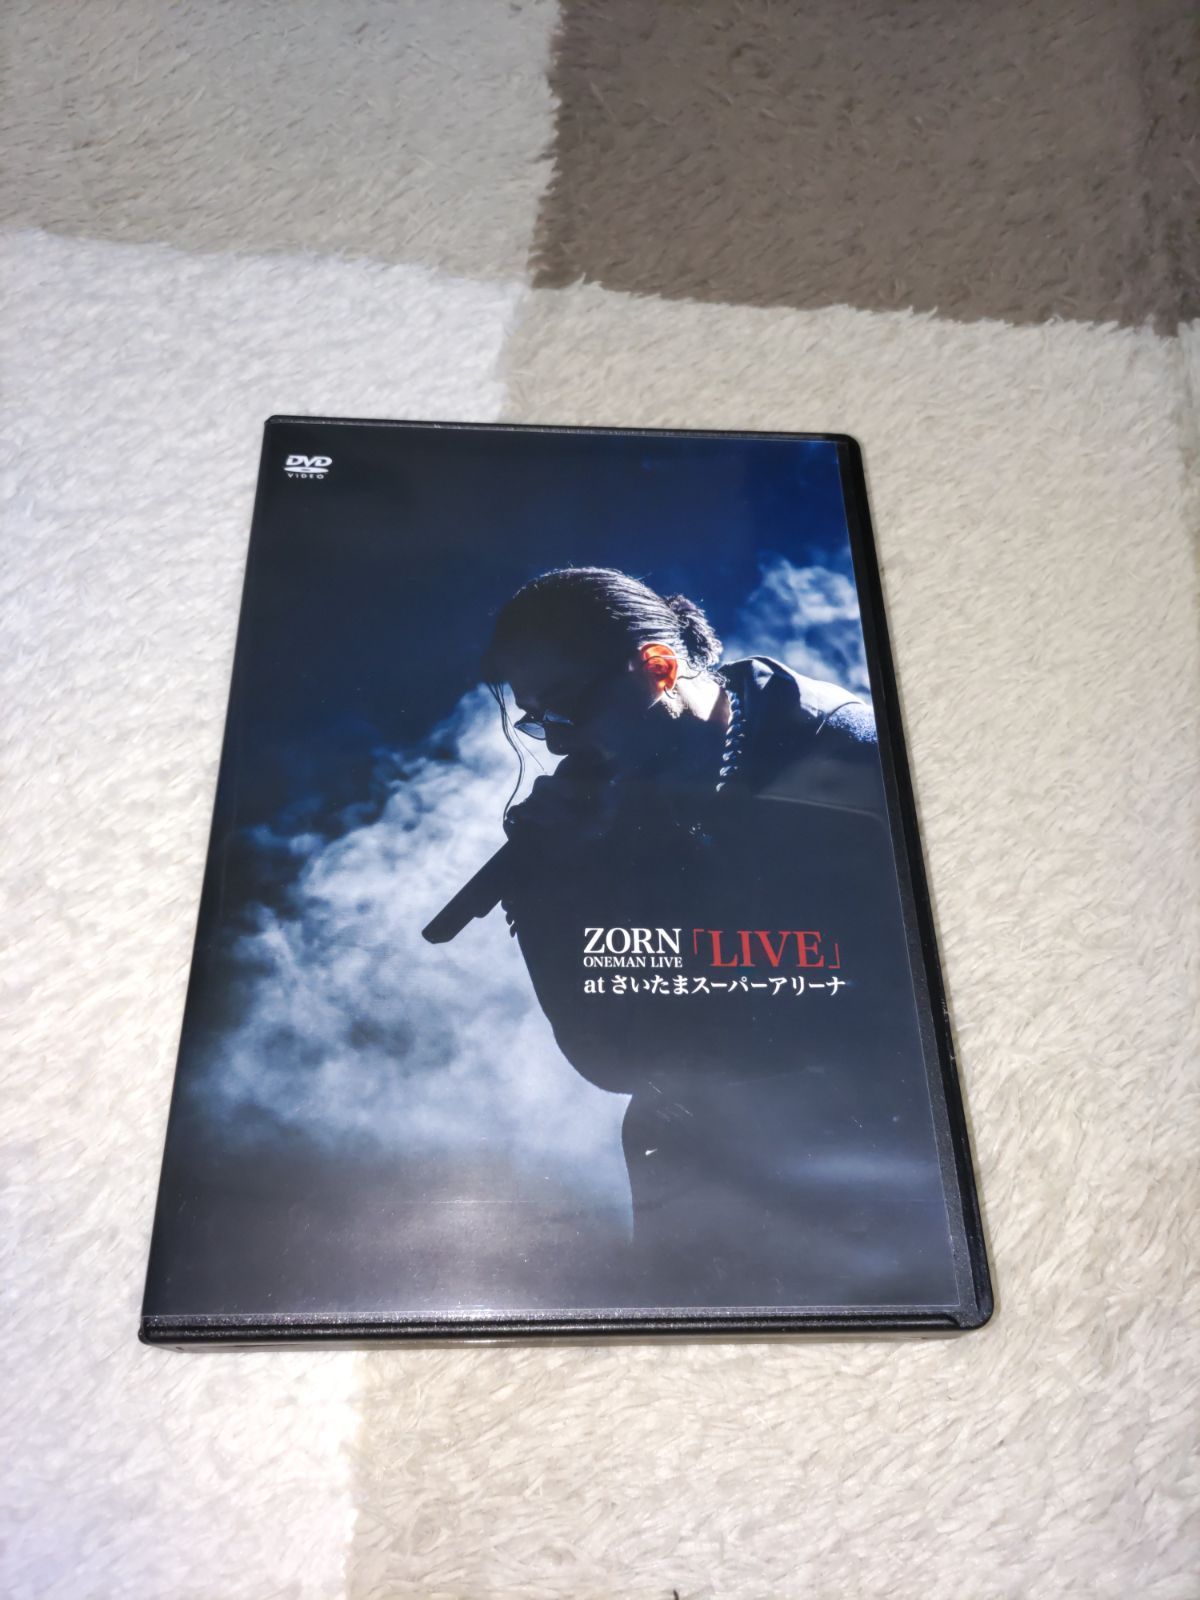 ZORN LIVE DVD atさいたまアリーナ - ブルーレイ